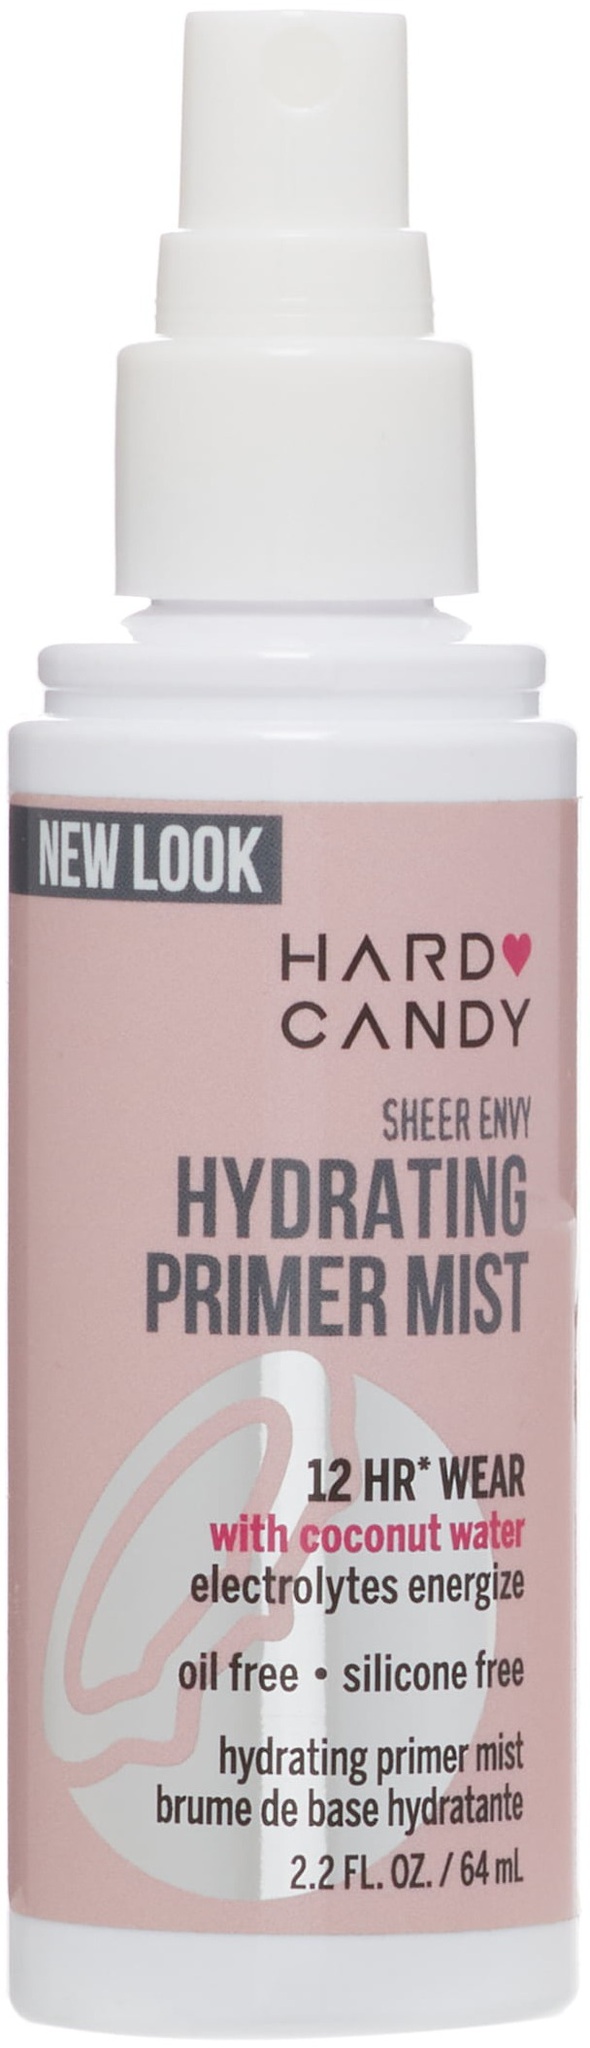 Hard Candy Sheer Envy Hydrating Primer Mist